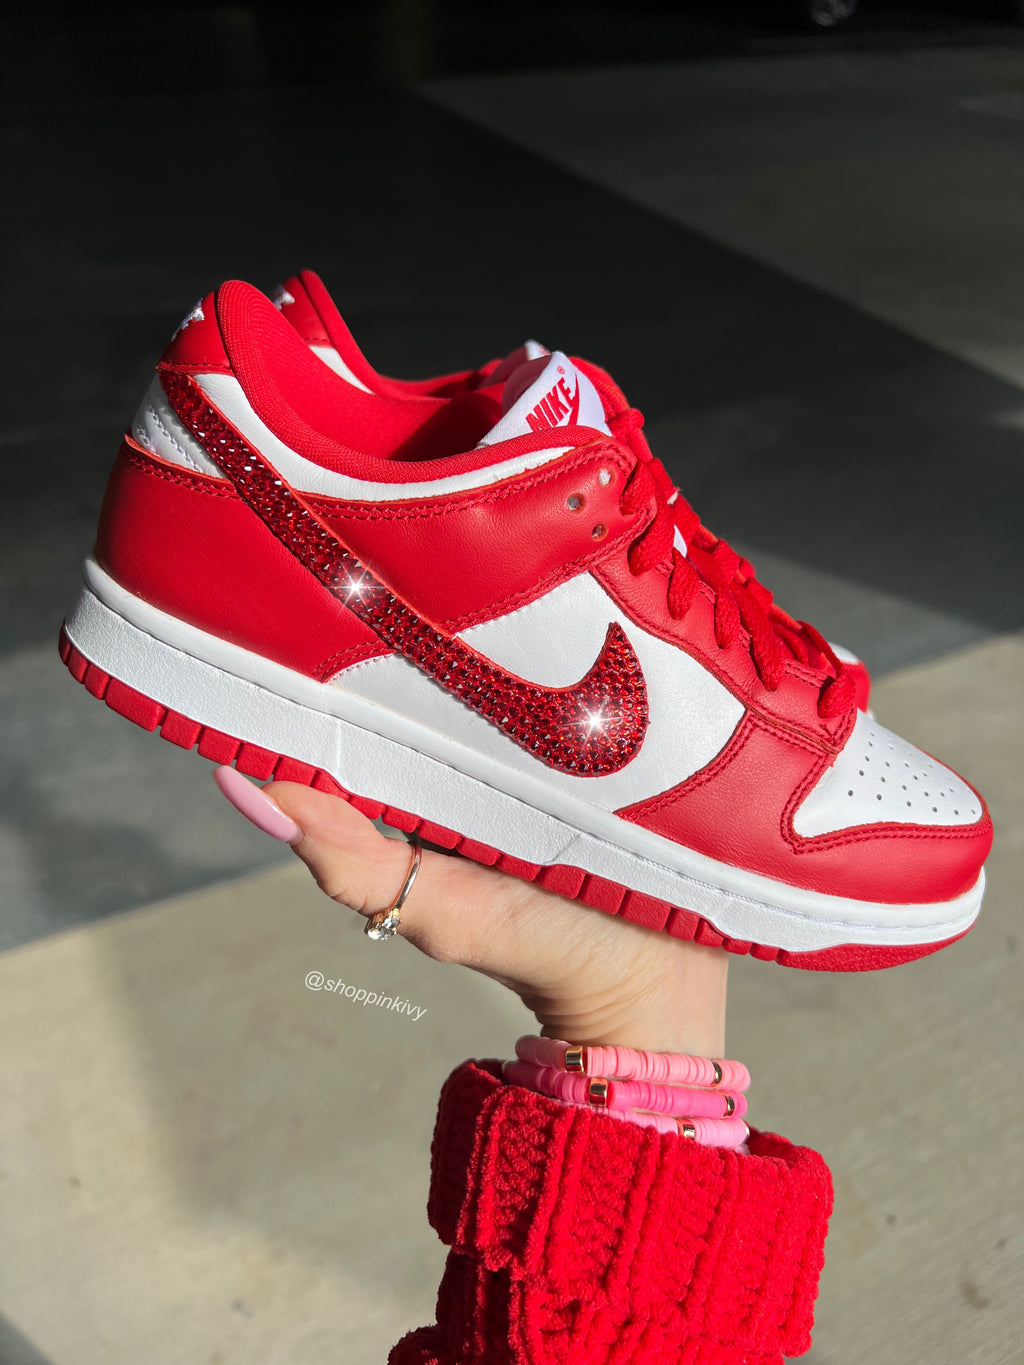 Raros zapatos Nike Dunk rojos Swarovski para mujer